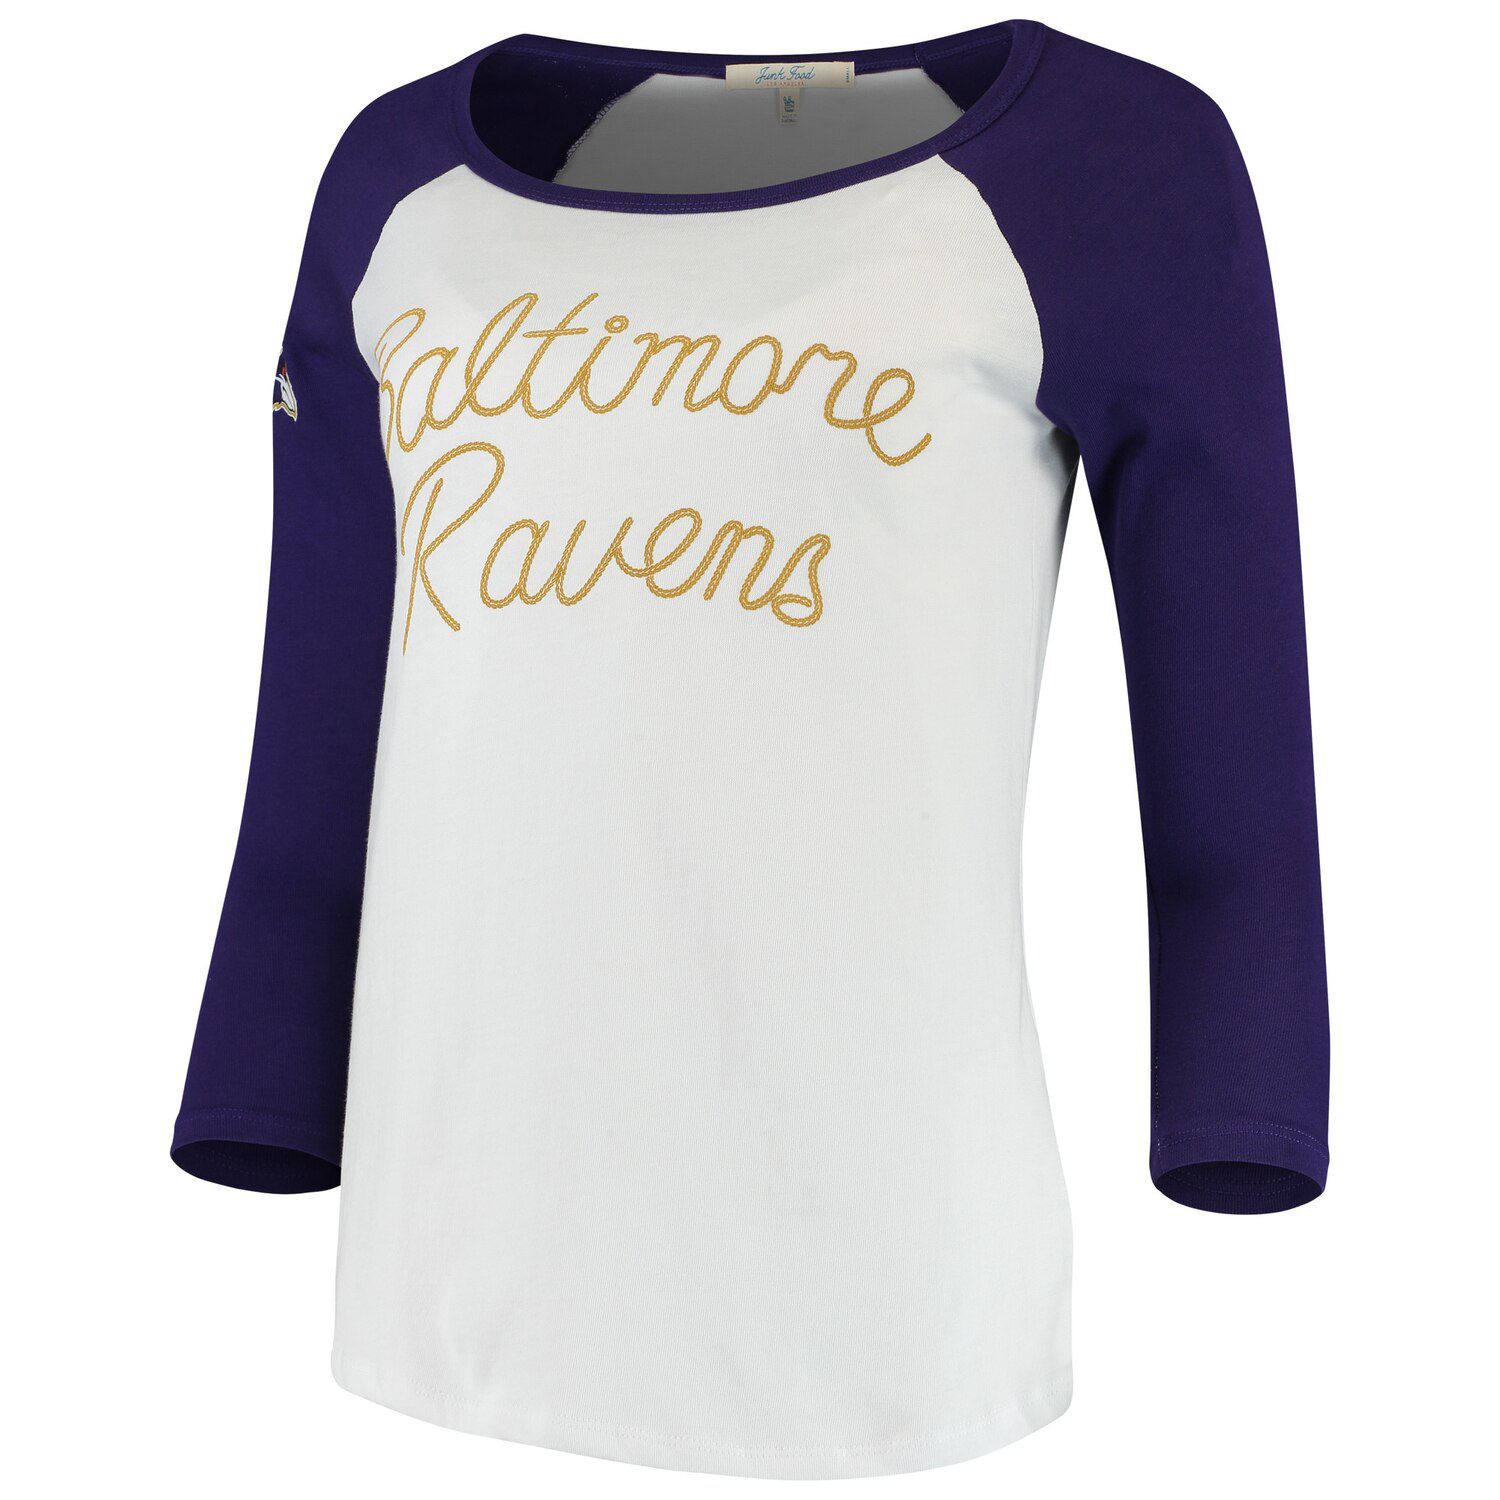 baltimore ravens women's shirts